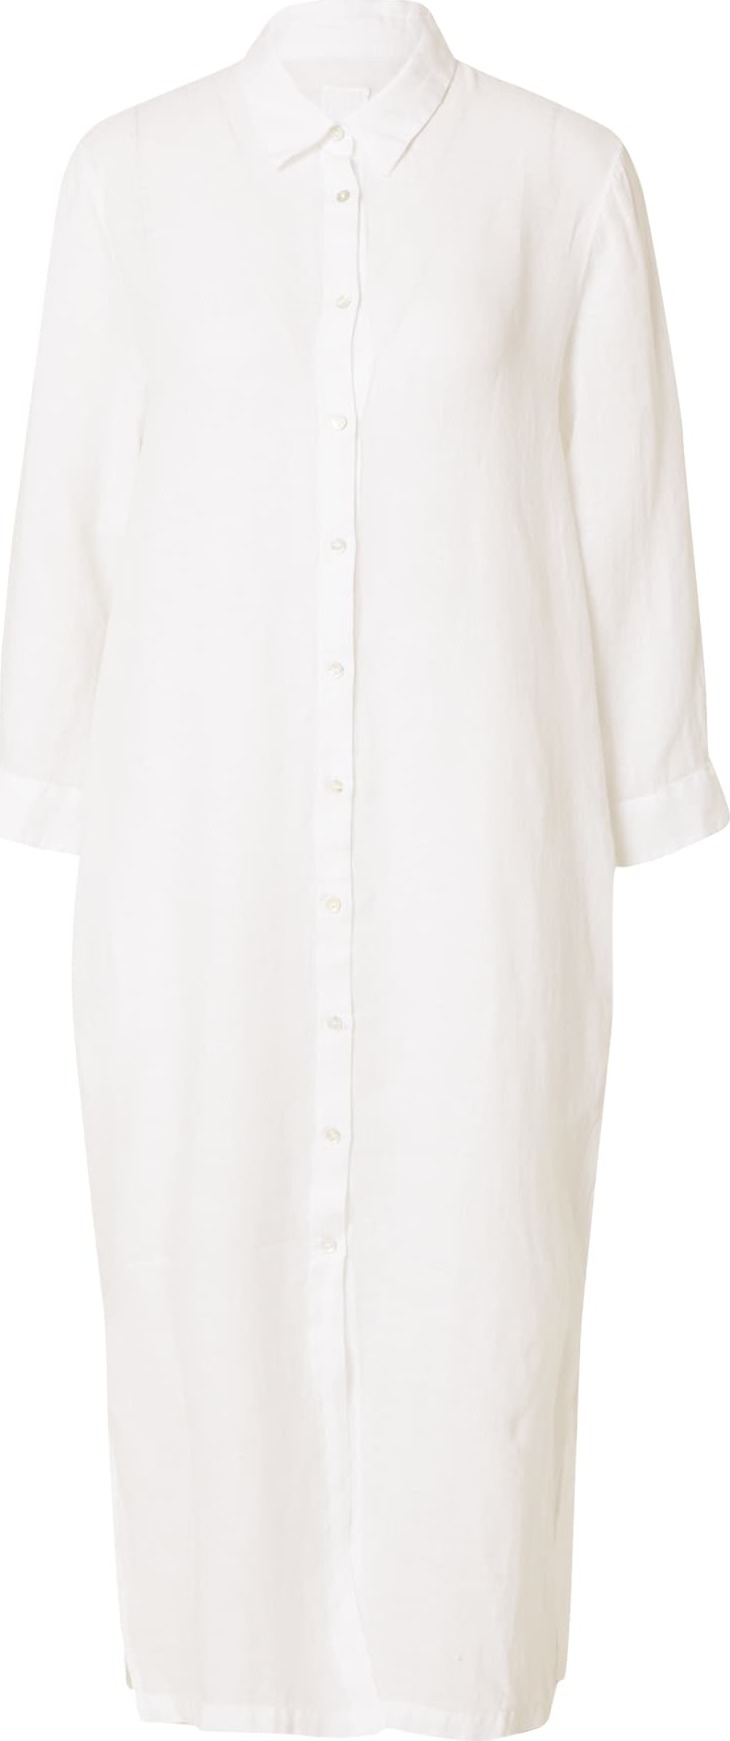 120% Lino Košilové šaty bílá